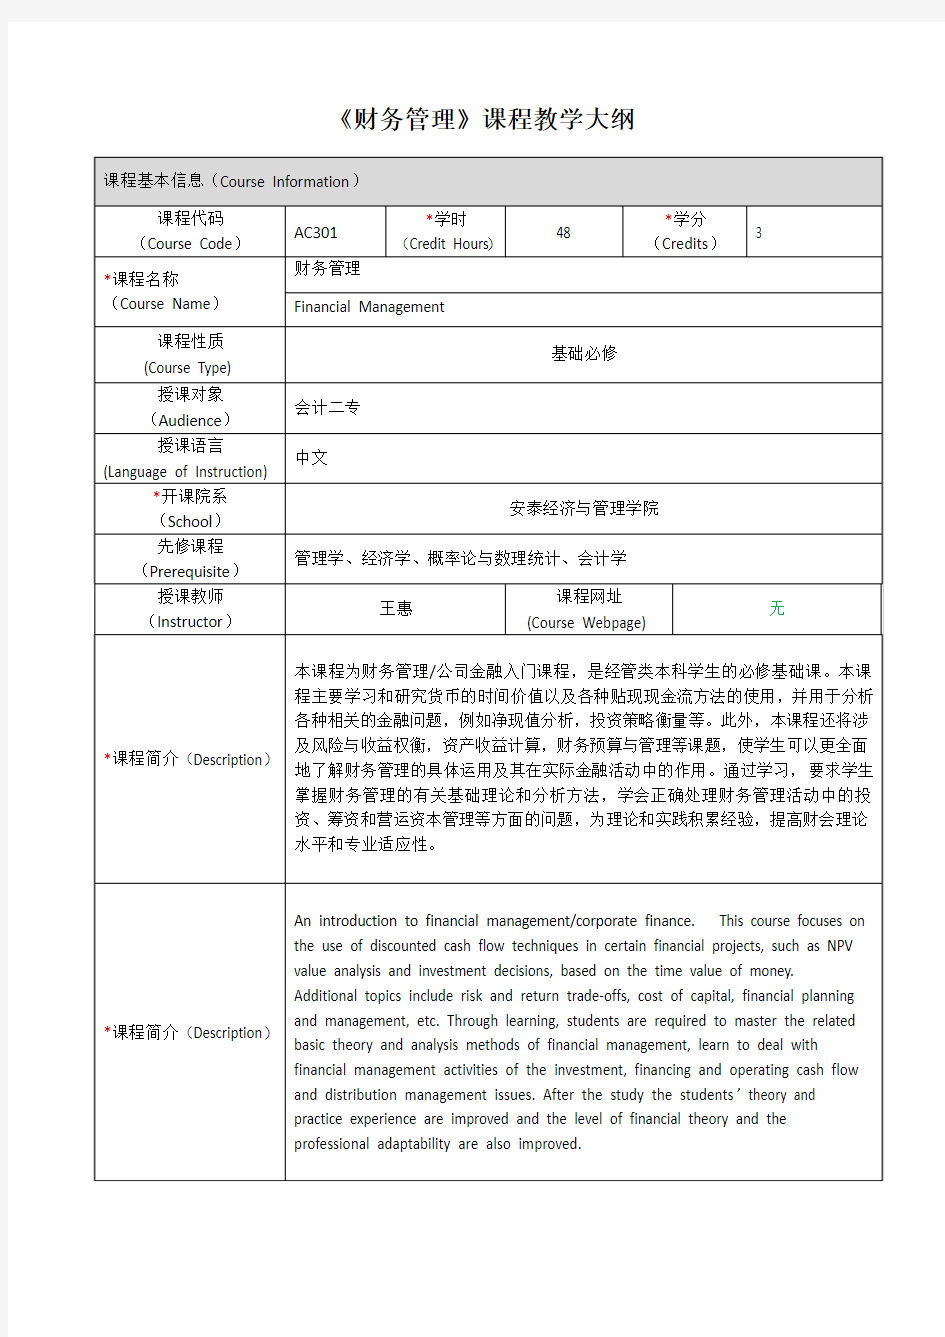 《财务管理》课程教学大纲-上海交通大学安泰经济与管理学院